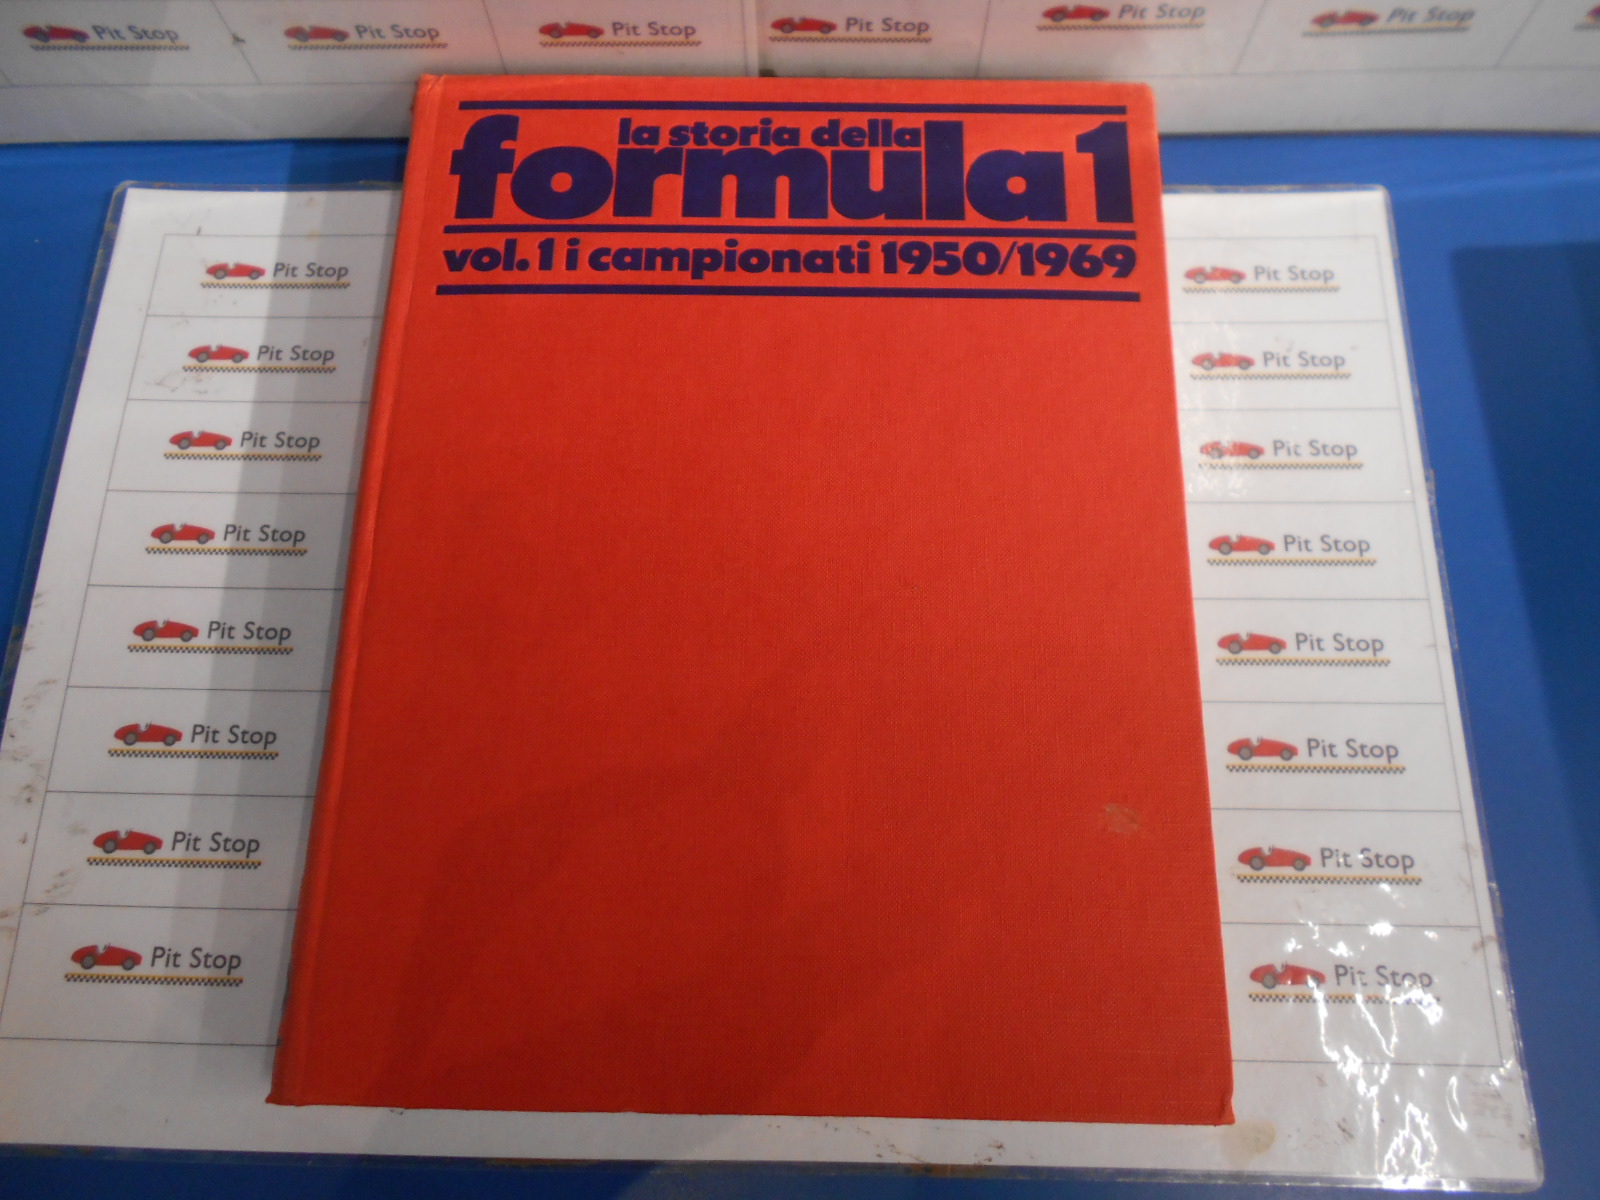 Libro La storia della Formula 1 1950/1969 Vol. 1 i campionati